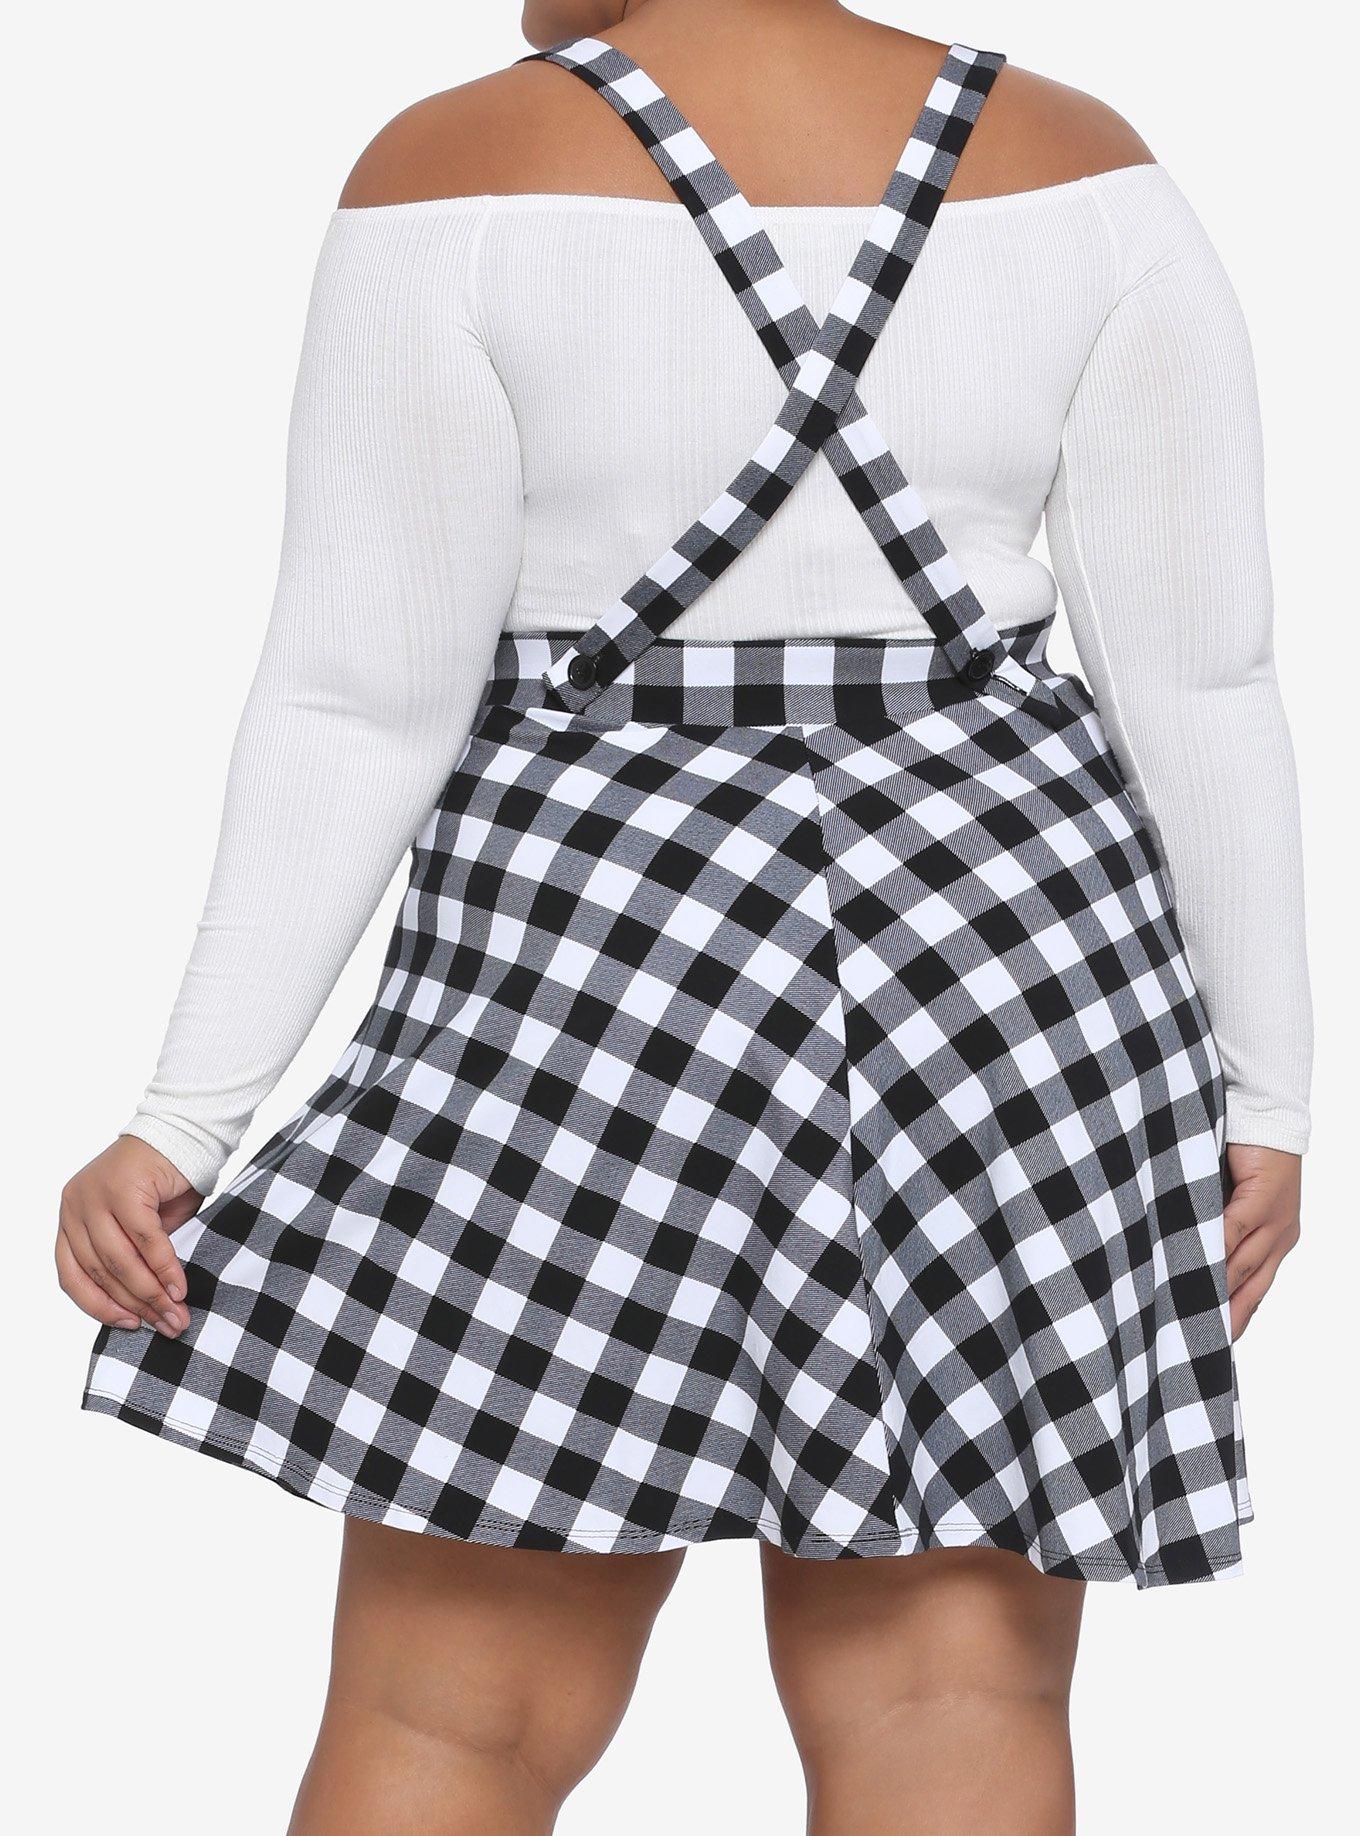 Black & White Gingham Suspender Skirt Plus Size, GINGHAM WHITE-BLACK, alternate